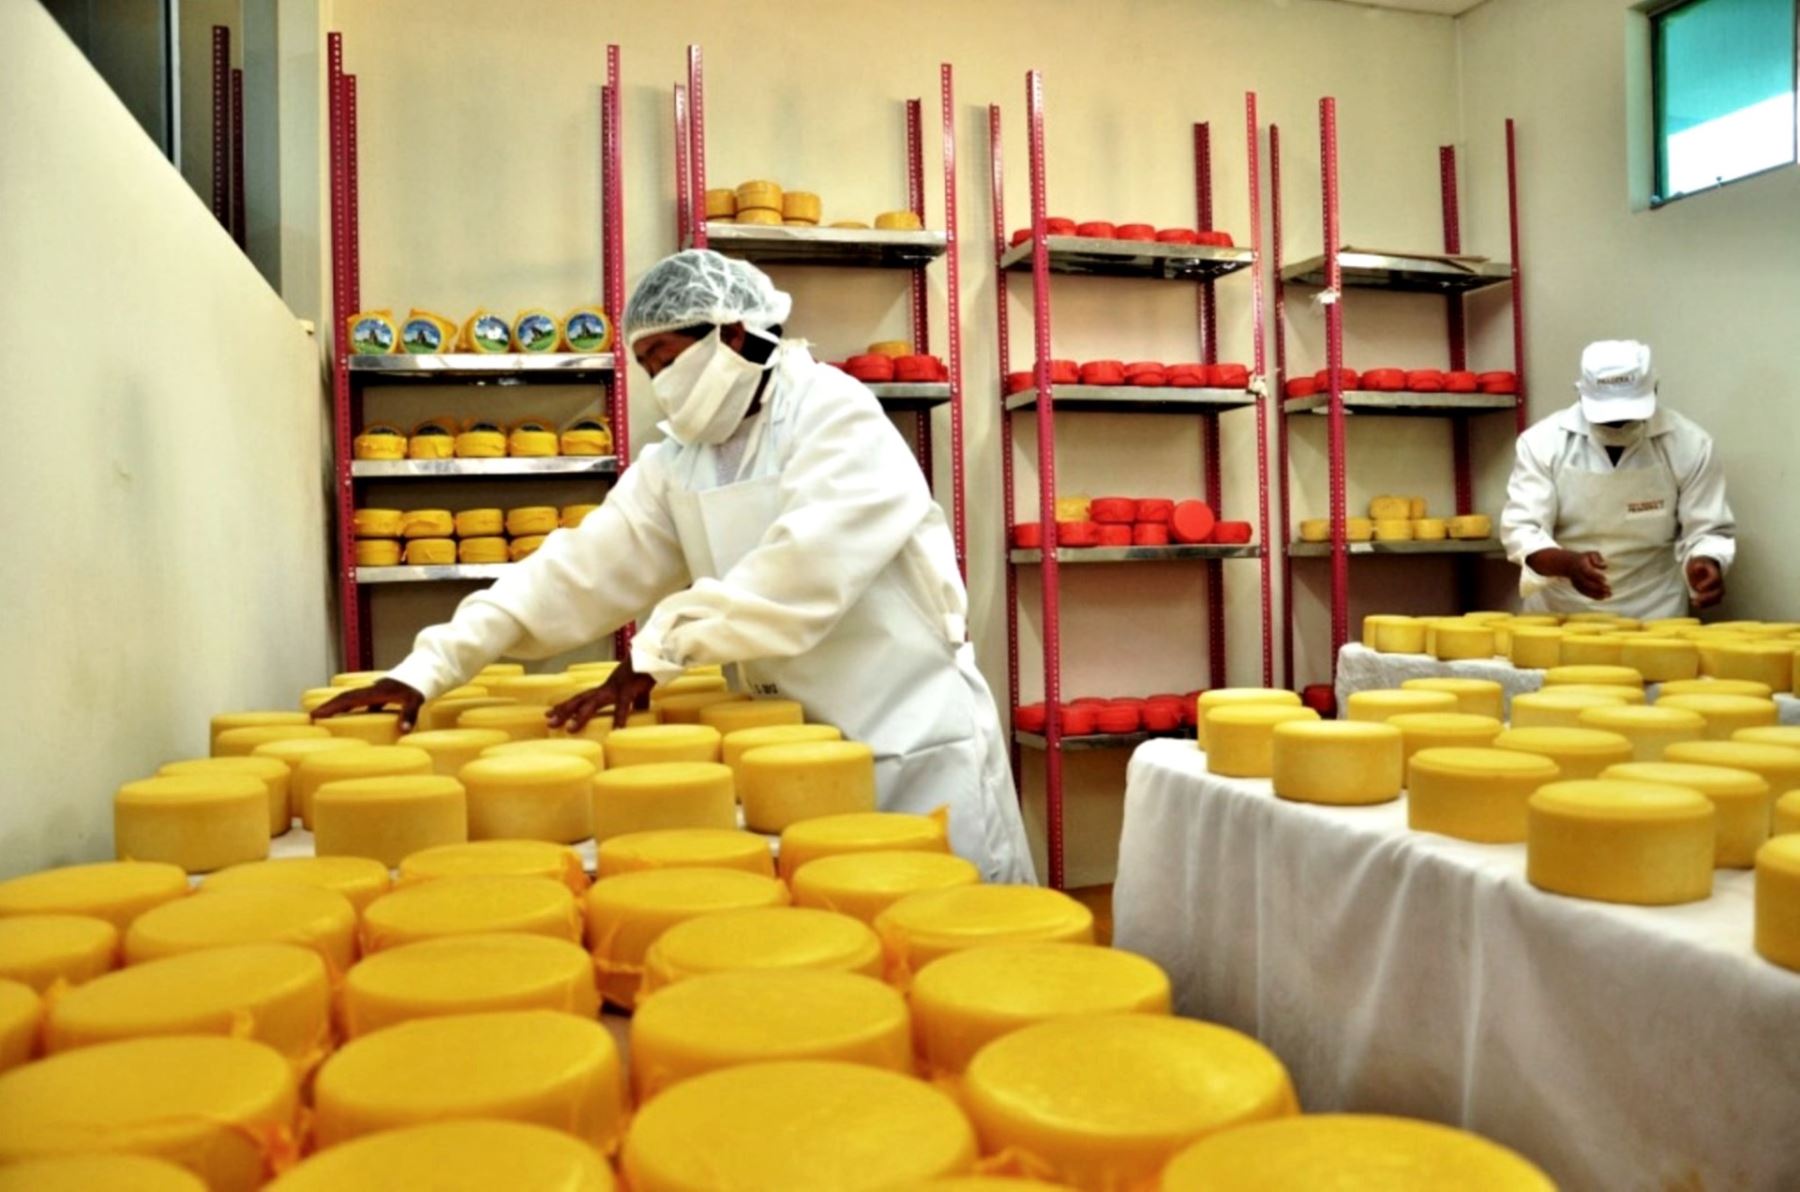 Productores de Cajamarca presentarán sus mejores variedades de queso en el Salón del Queso que se realizará este fin de semana en Lima. ANDINA/Difusión